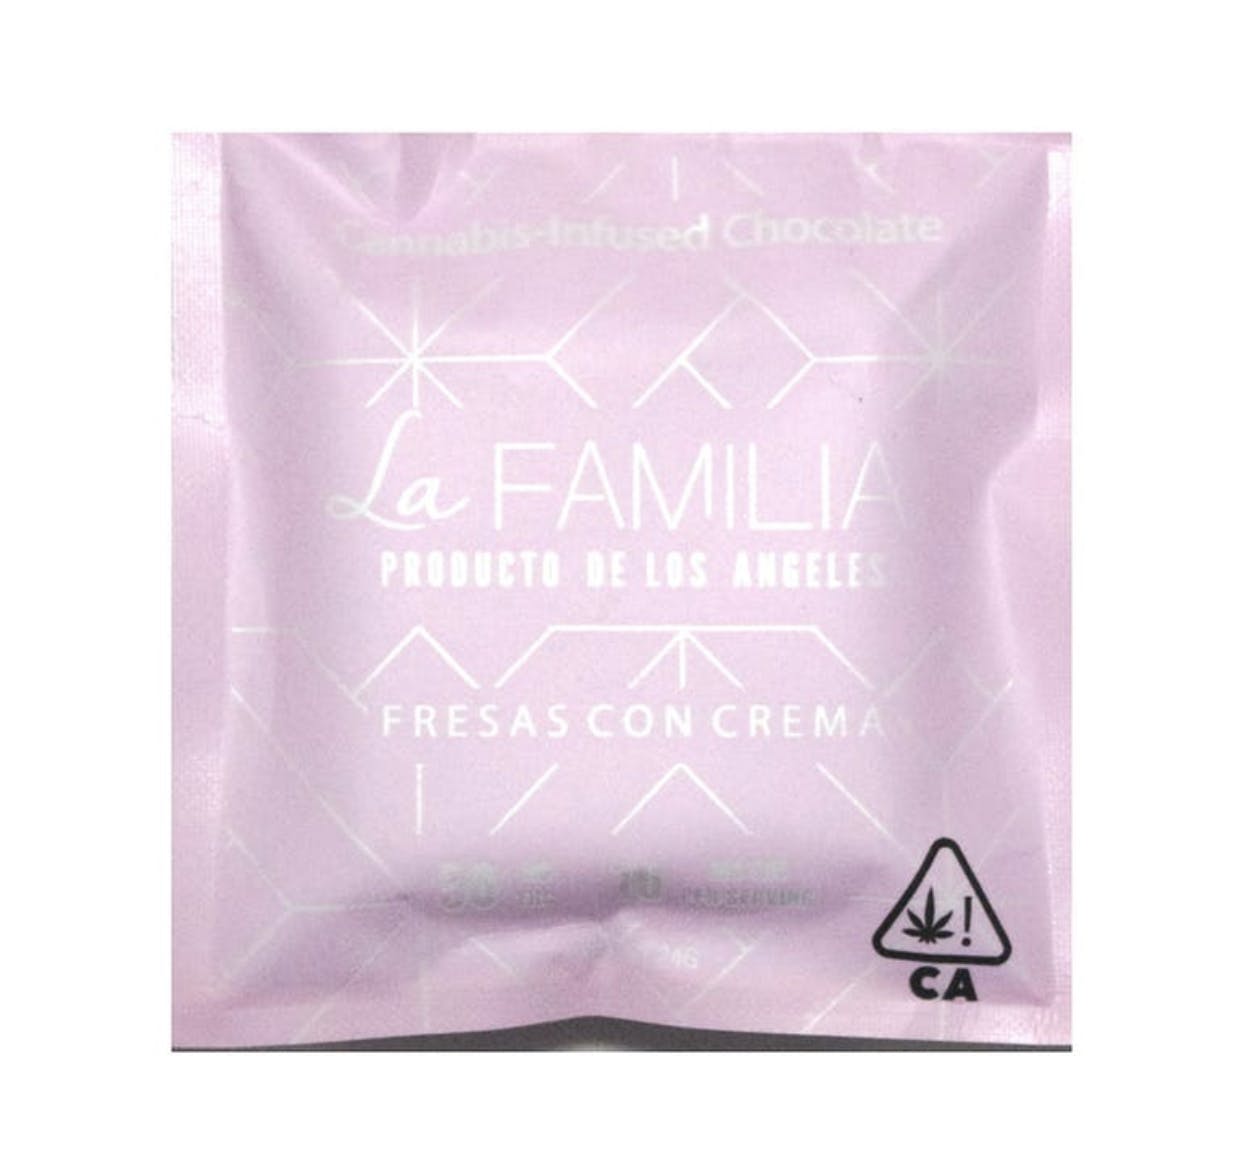 edible-la-familia-chocolate-2c-fresas-con-crema